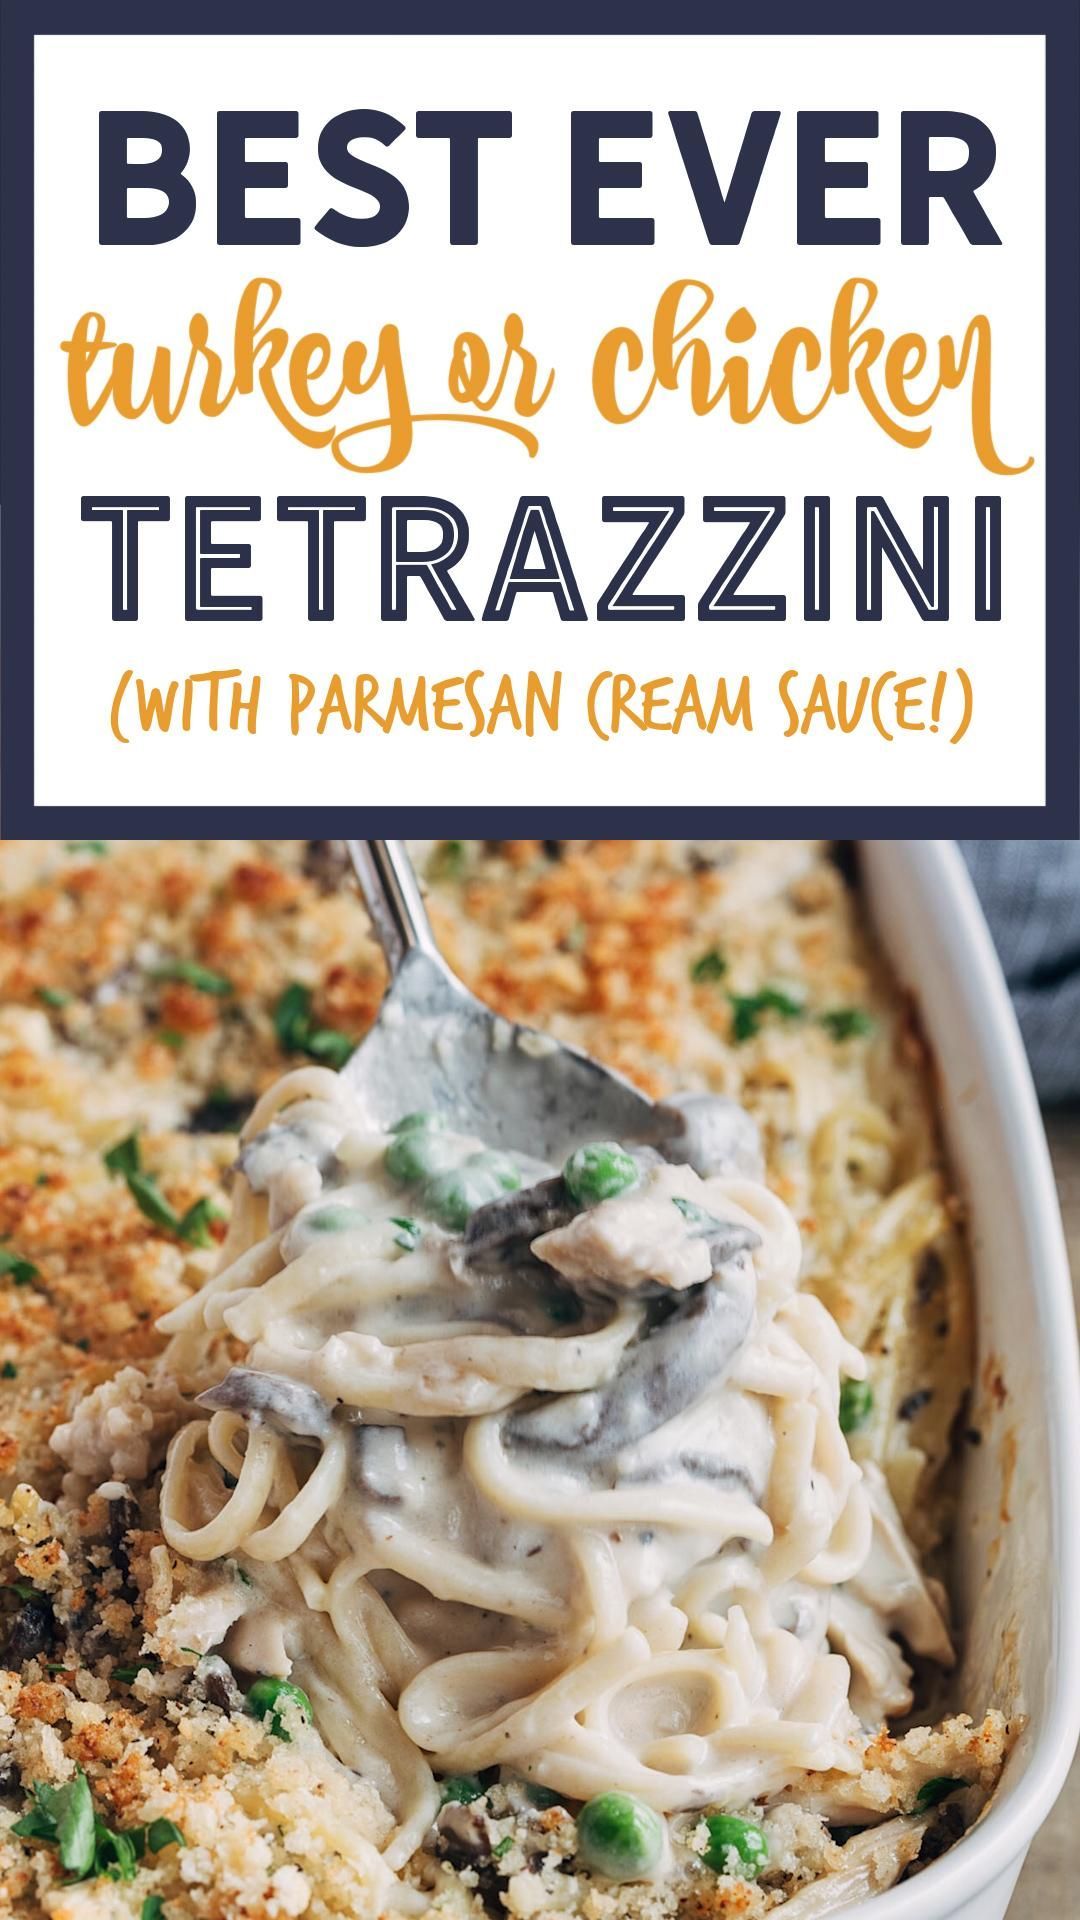 Creamy Turkey or Chicken Tetrazzini -   19 turkey tetrazzini recipe easy ideas